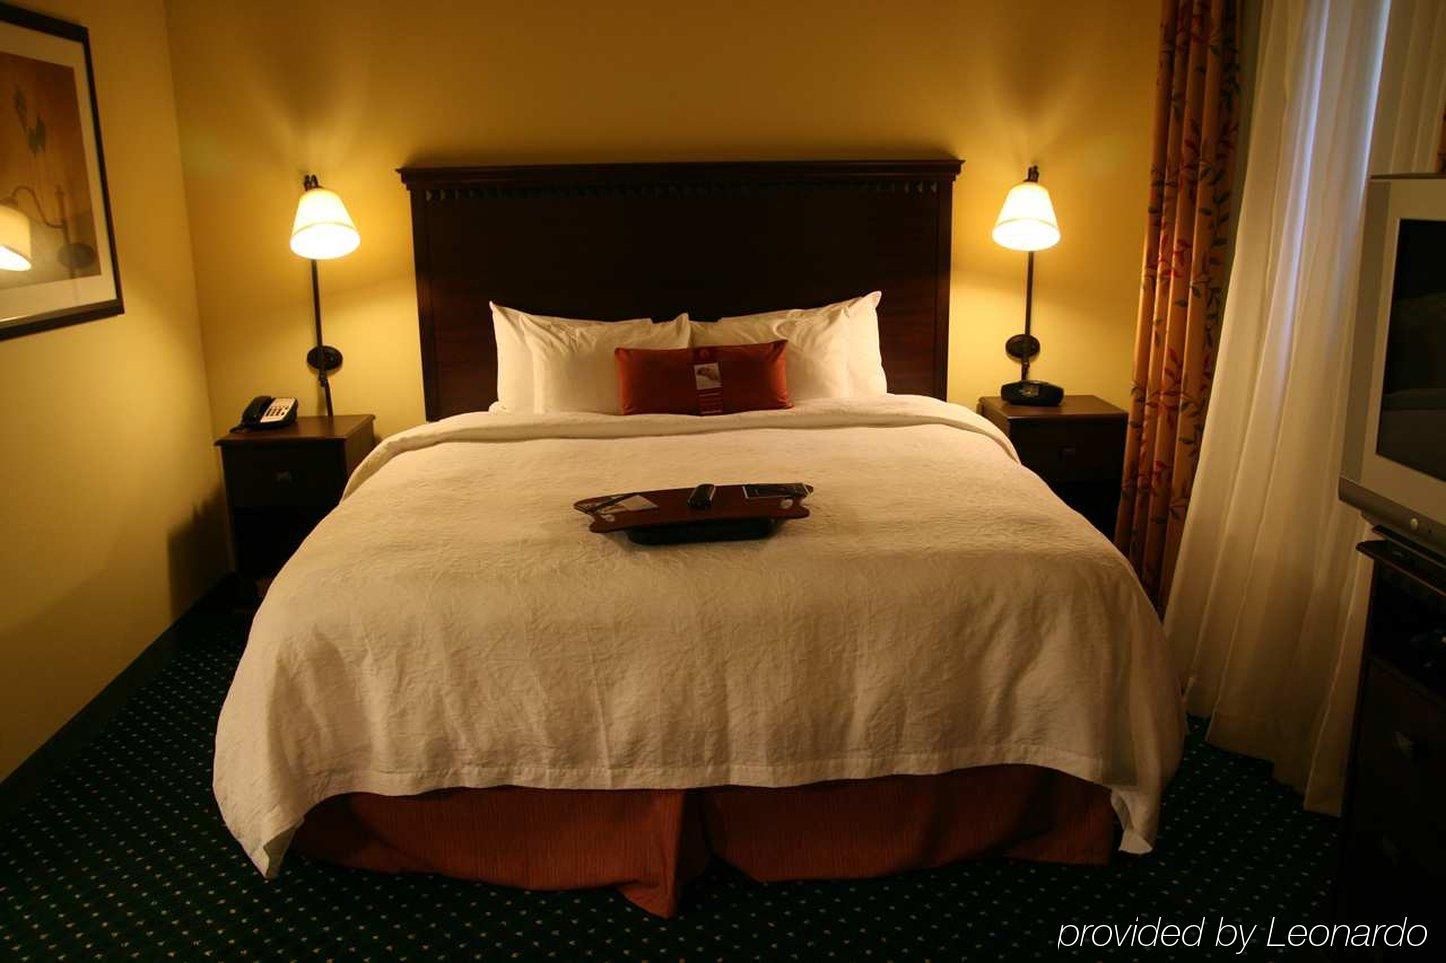 Hampton Inn & Suites Clearwater/St. Petersburg-Ulmerton Road Room photo